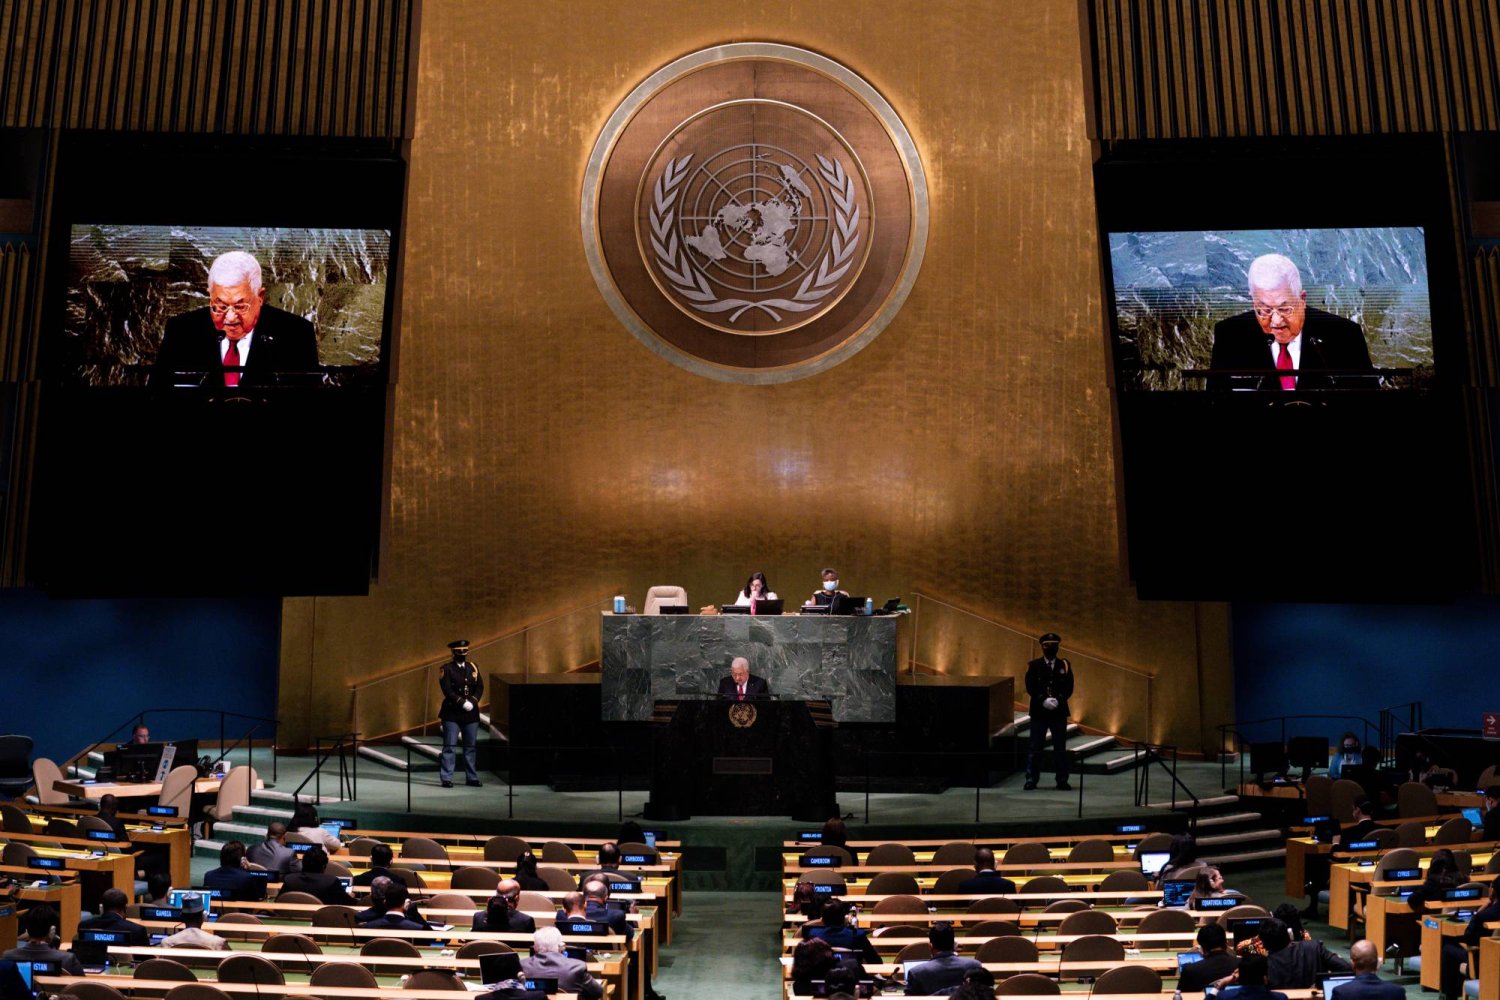 الرئيس الفلسطيني محمود عباس يلقي كلمة أمام الدورة السابعة والسبعين للجمعية العامة للأمم المتحدة في 23 سبتمبر 2022 بمقر الأمم المتحدة بنيويورك (أ.ب)